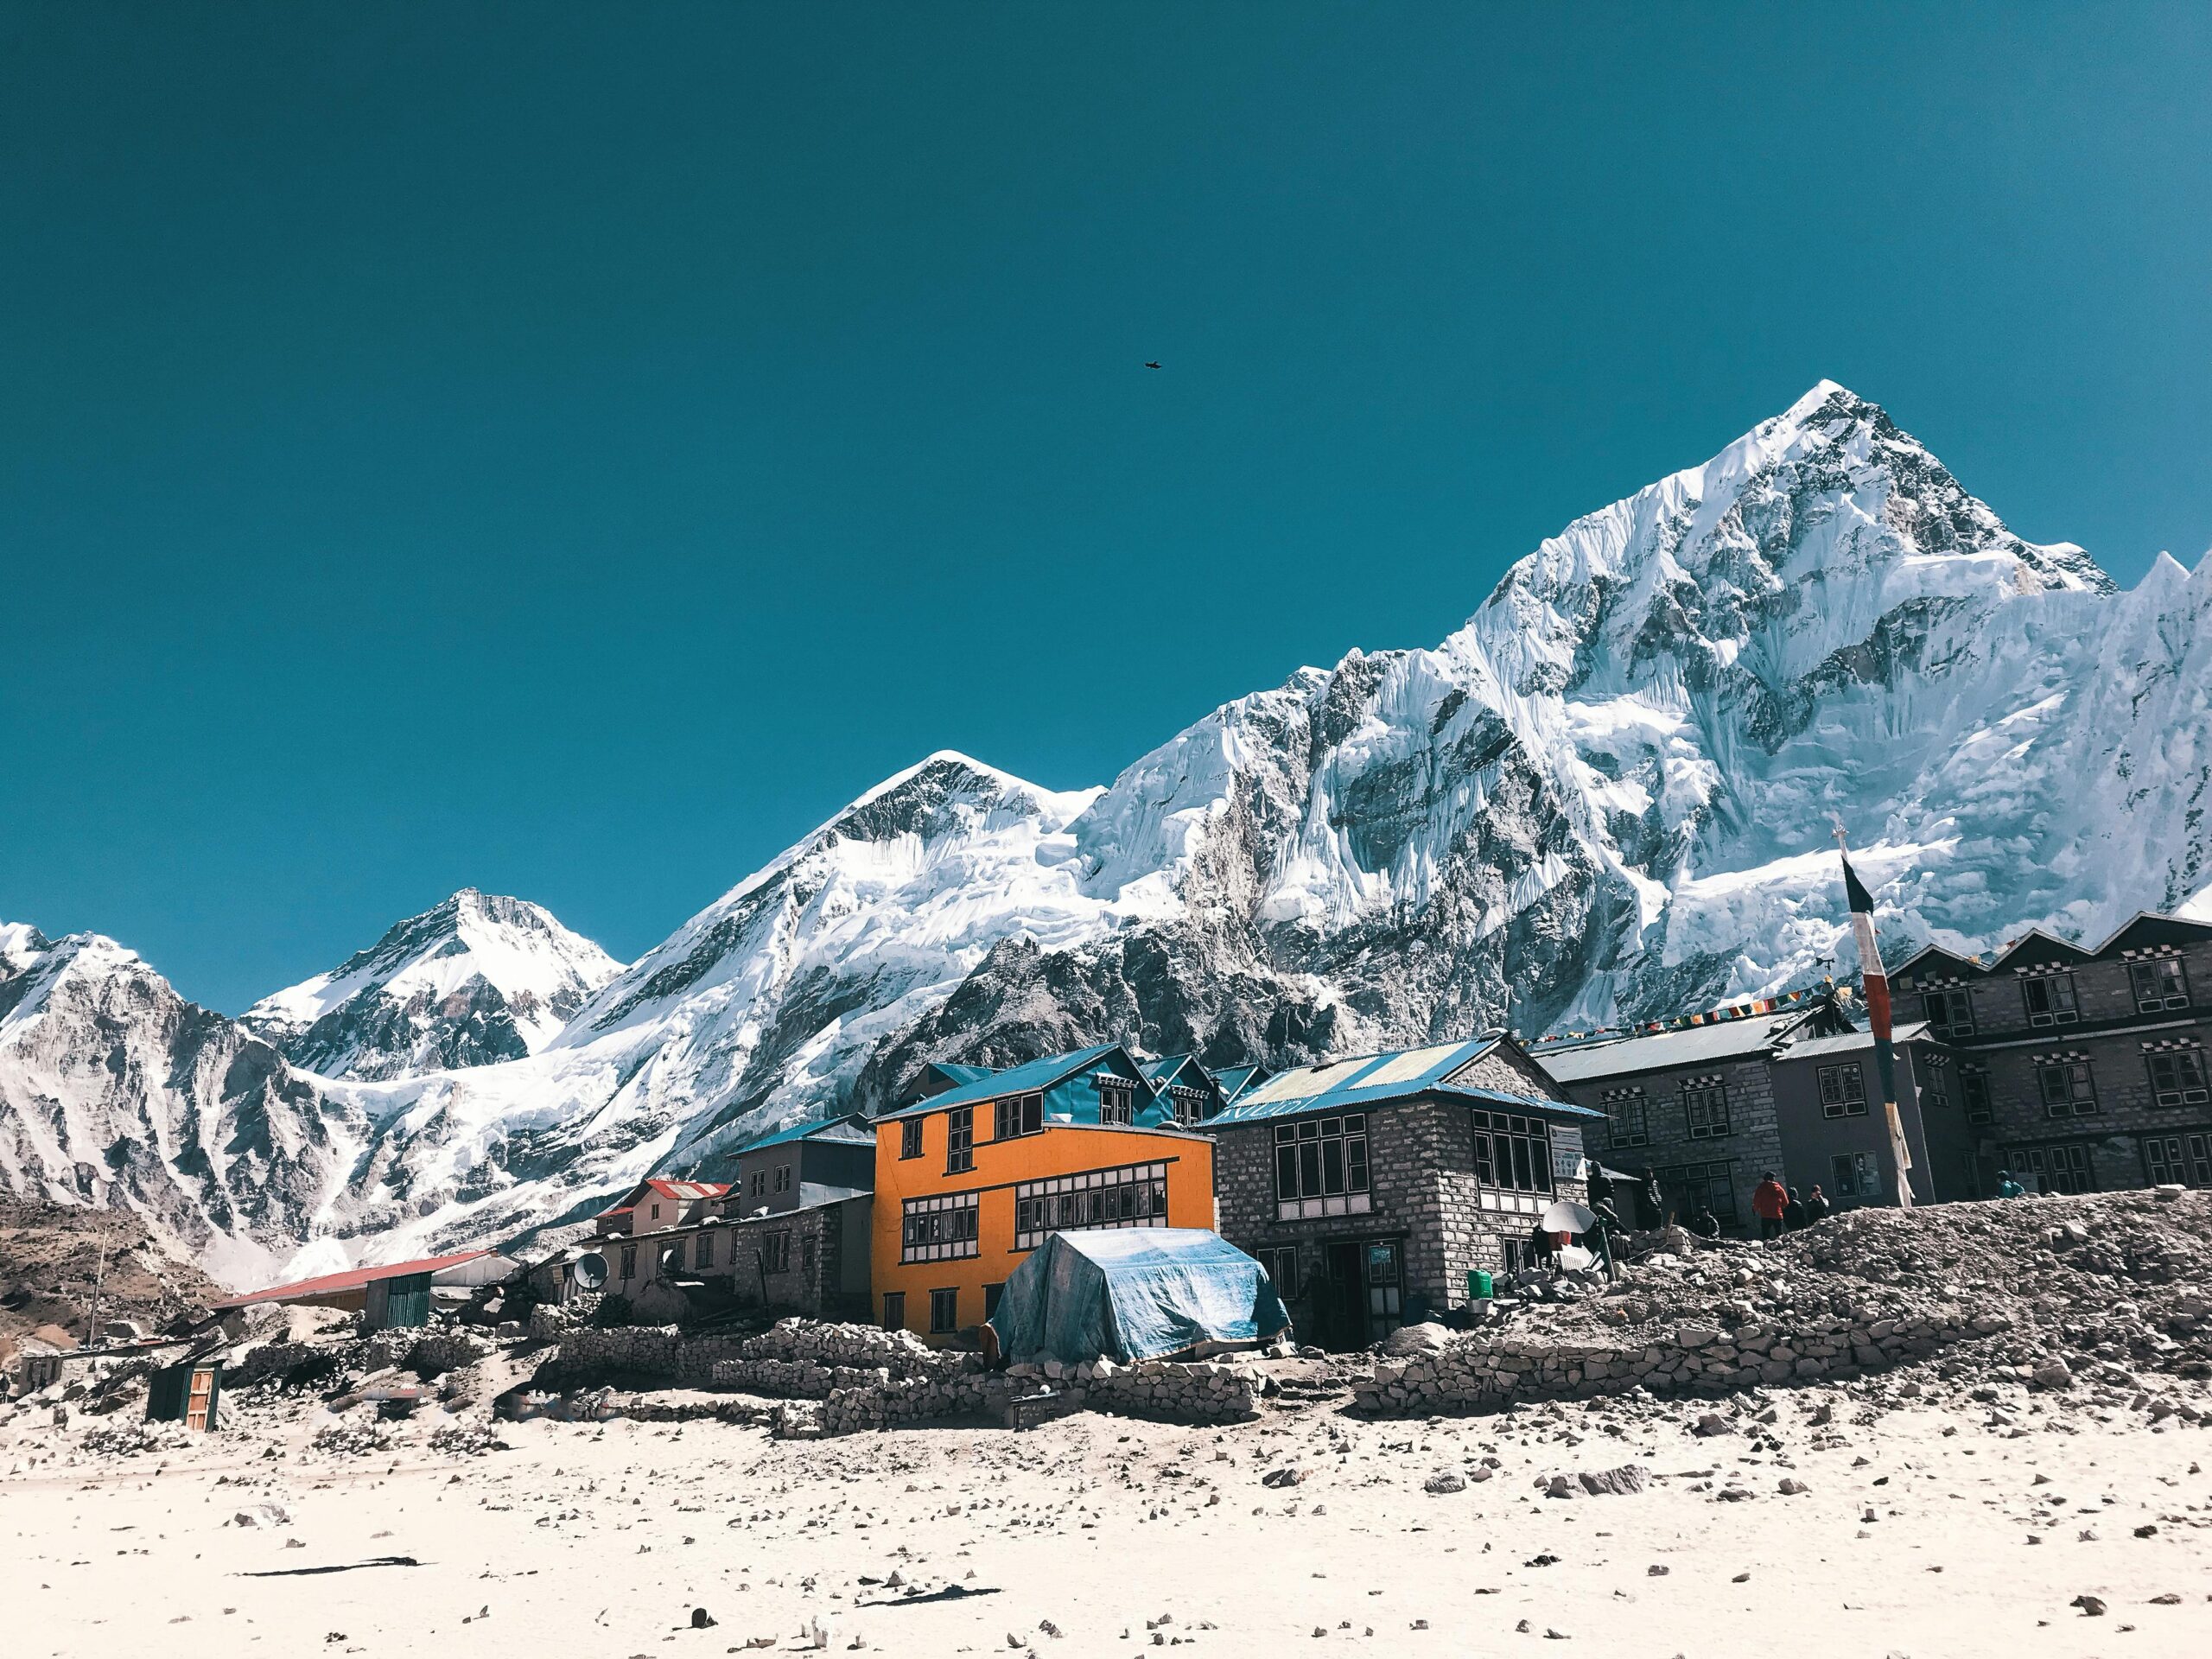 Escaladores del Monte Everest deberán llevarse sus desechos para combatir la contaminación